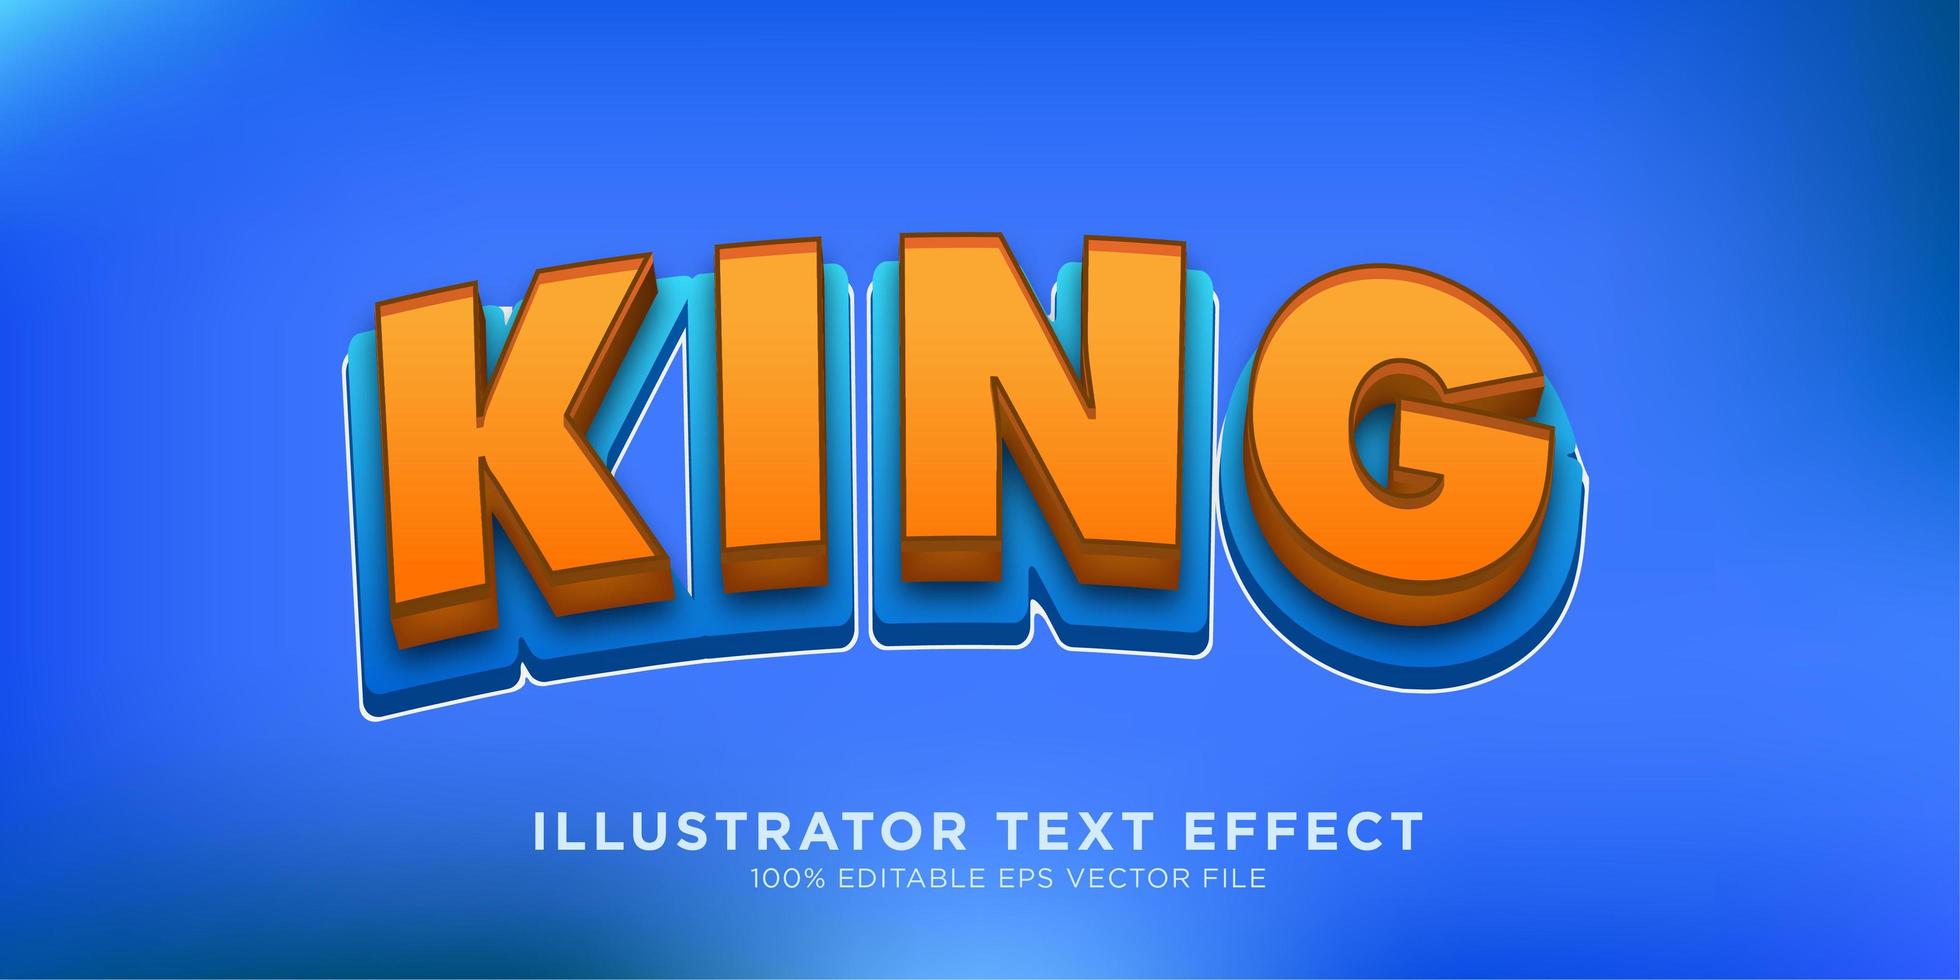 koning vetgedrukt teksteffect ontwerp vector